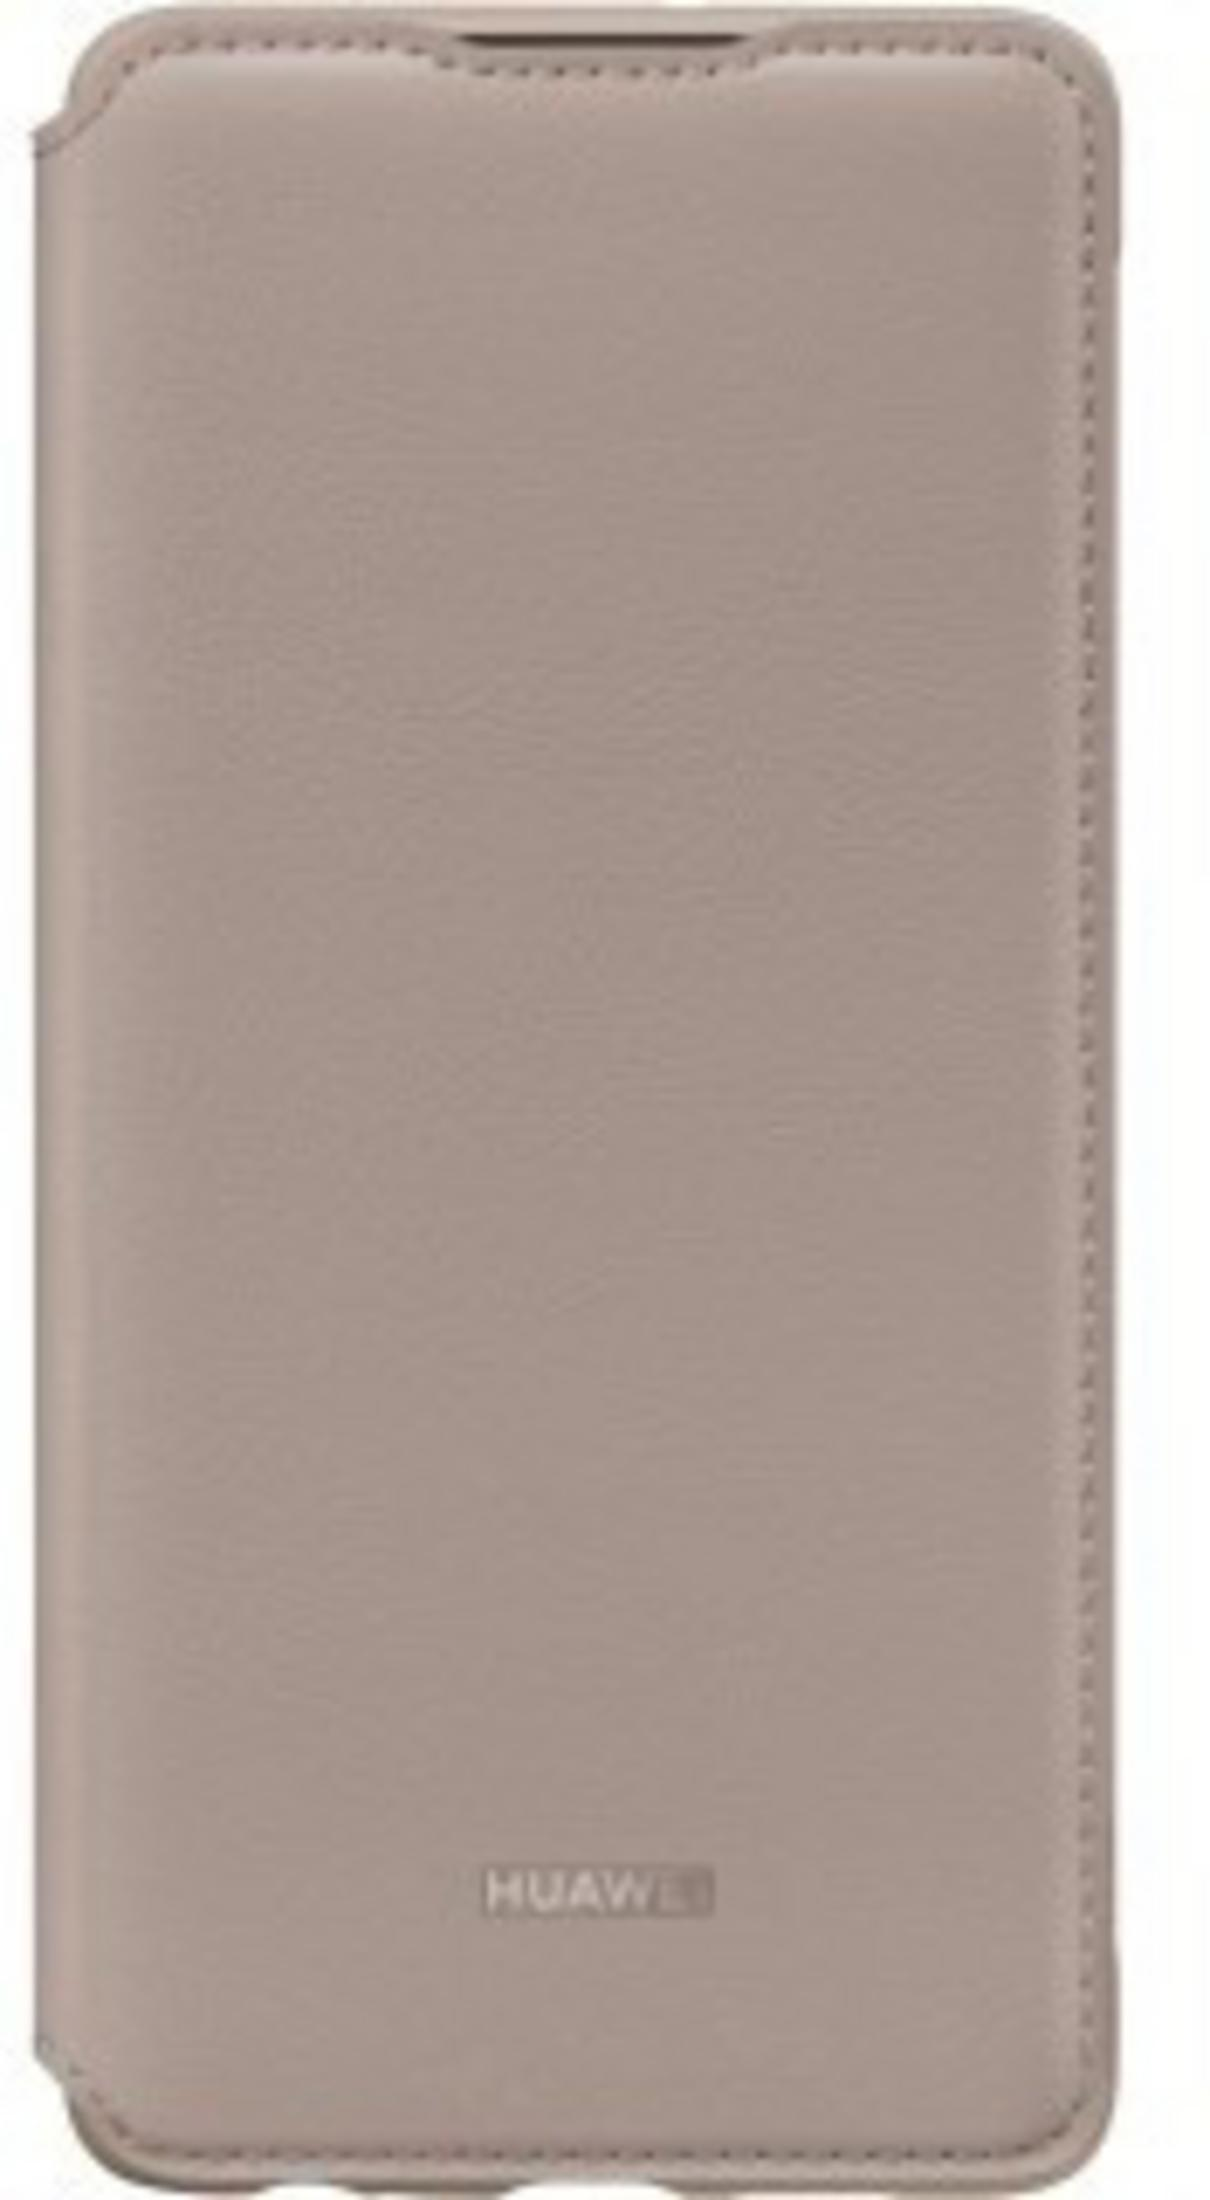 HUAWEI Original Flip Smart Orange P30, Bookcover, Case, Huawei, View